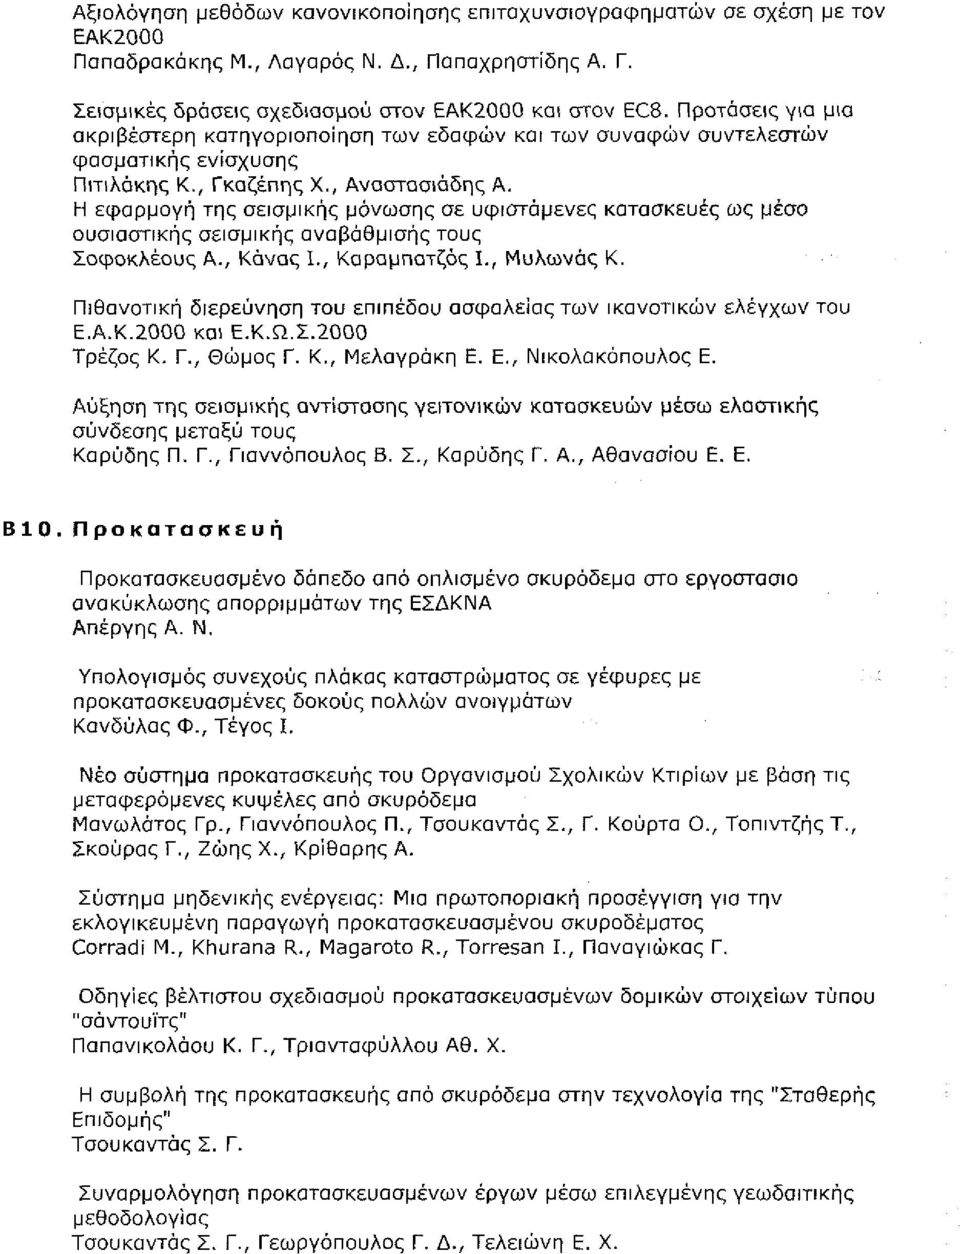 , Αναστασιάδης Α., σελ. 277-286 - ' - " Β9.14 Η εφαρμογή της σεισμικής μόνωσης σε υφιστάμενες κατασκευές ως μέσο ουσιαστικής σεισμικής αναβάθμισης τους Σοφοκλέους Α., Κάνας Ι., Καραμπατζός Ι.